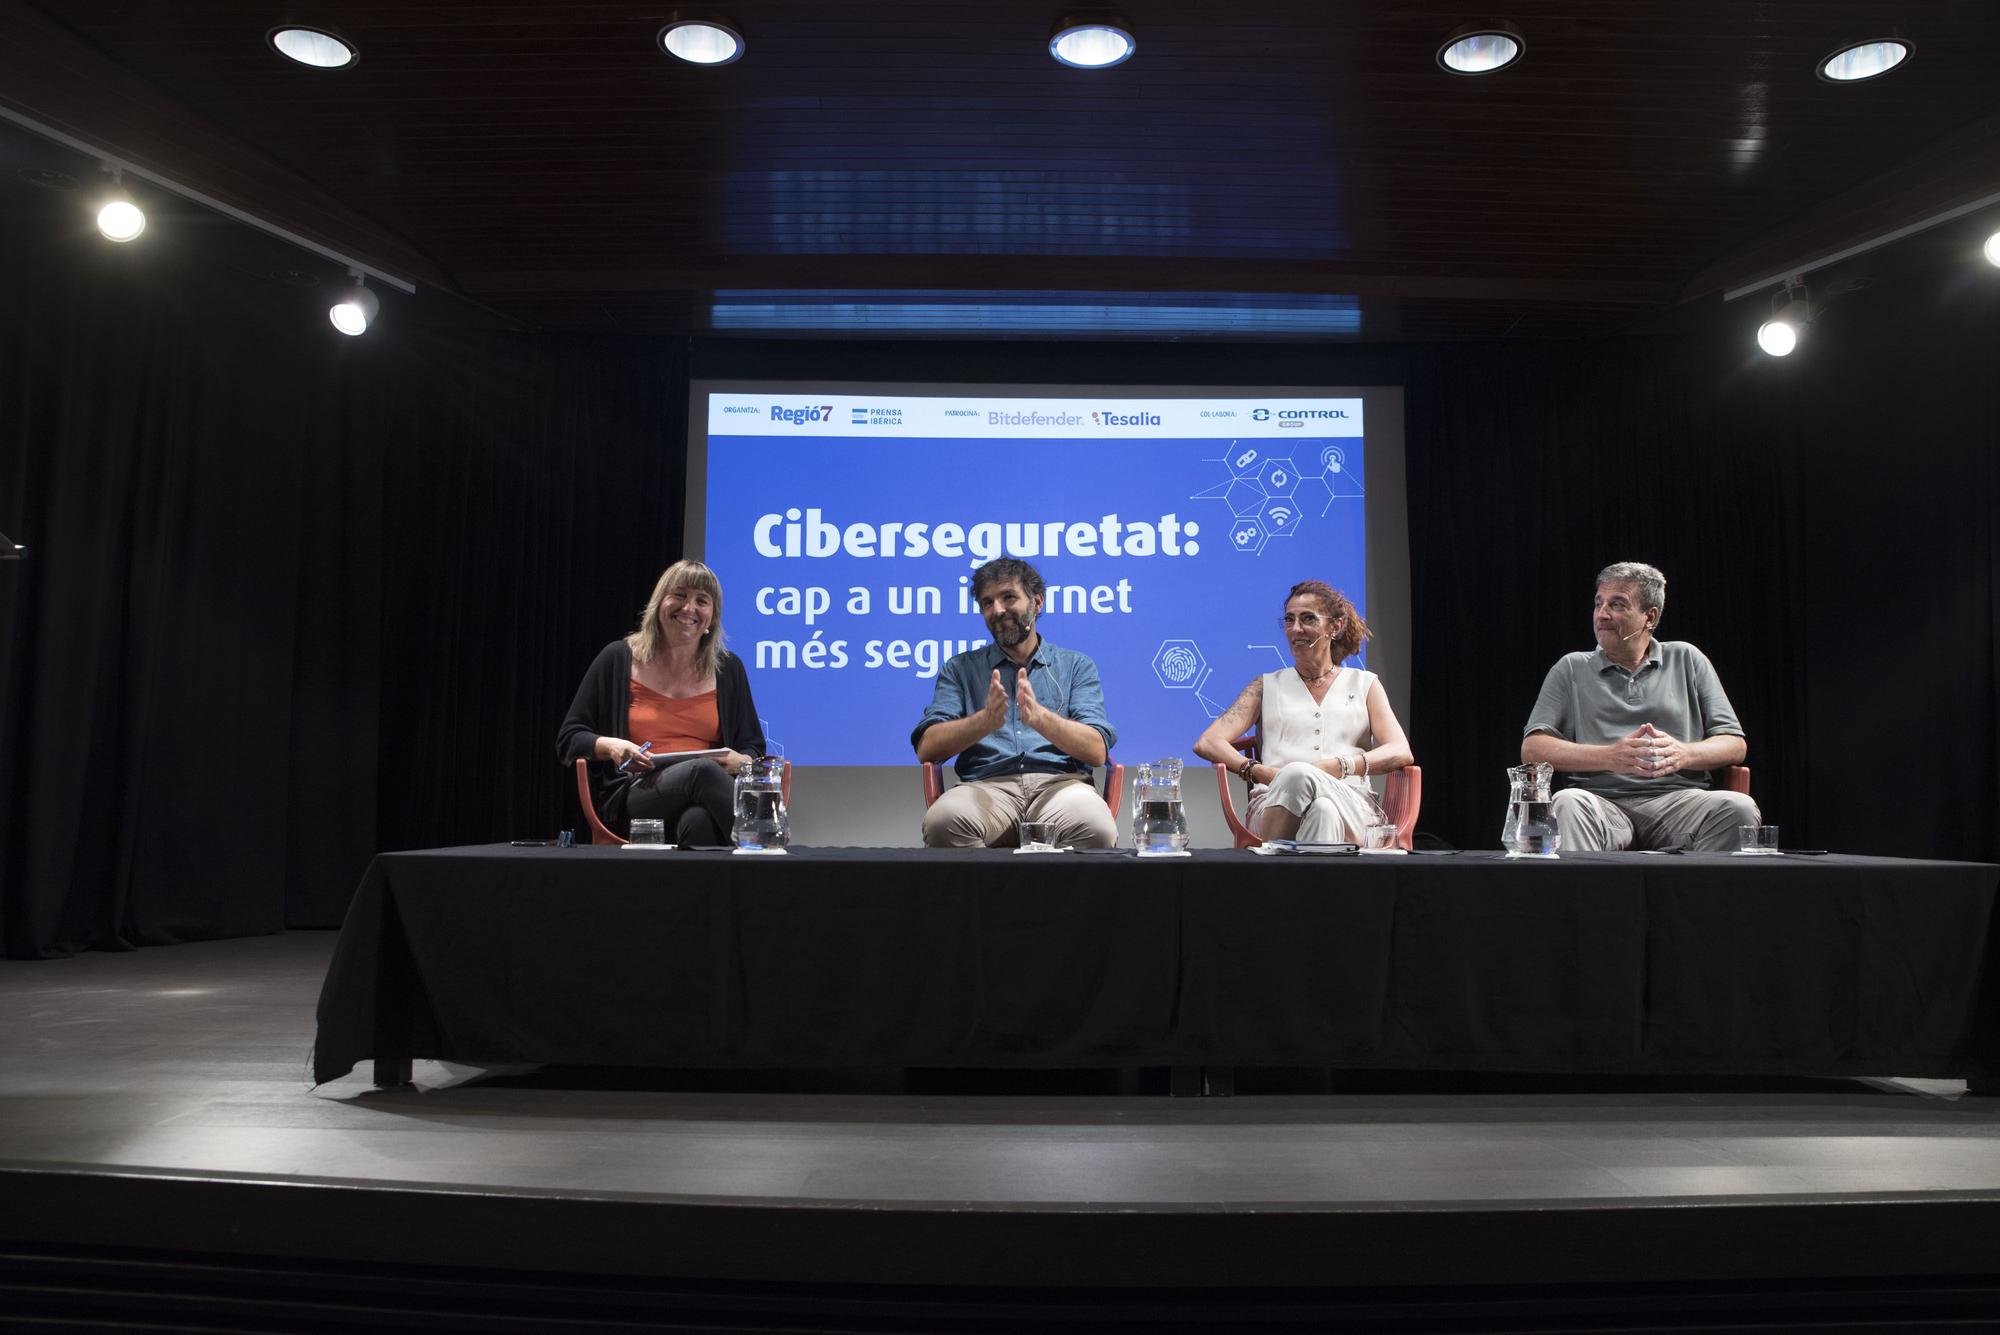 La jornada de debat sobre ciberseguretat de Regió7, en fotos